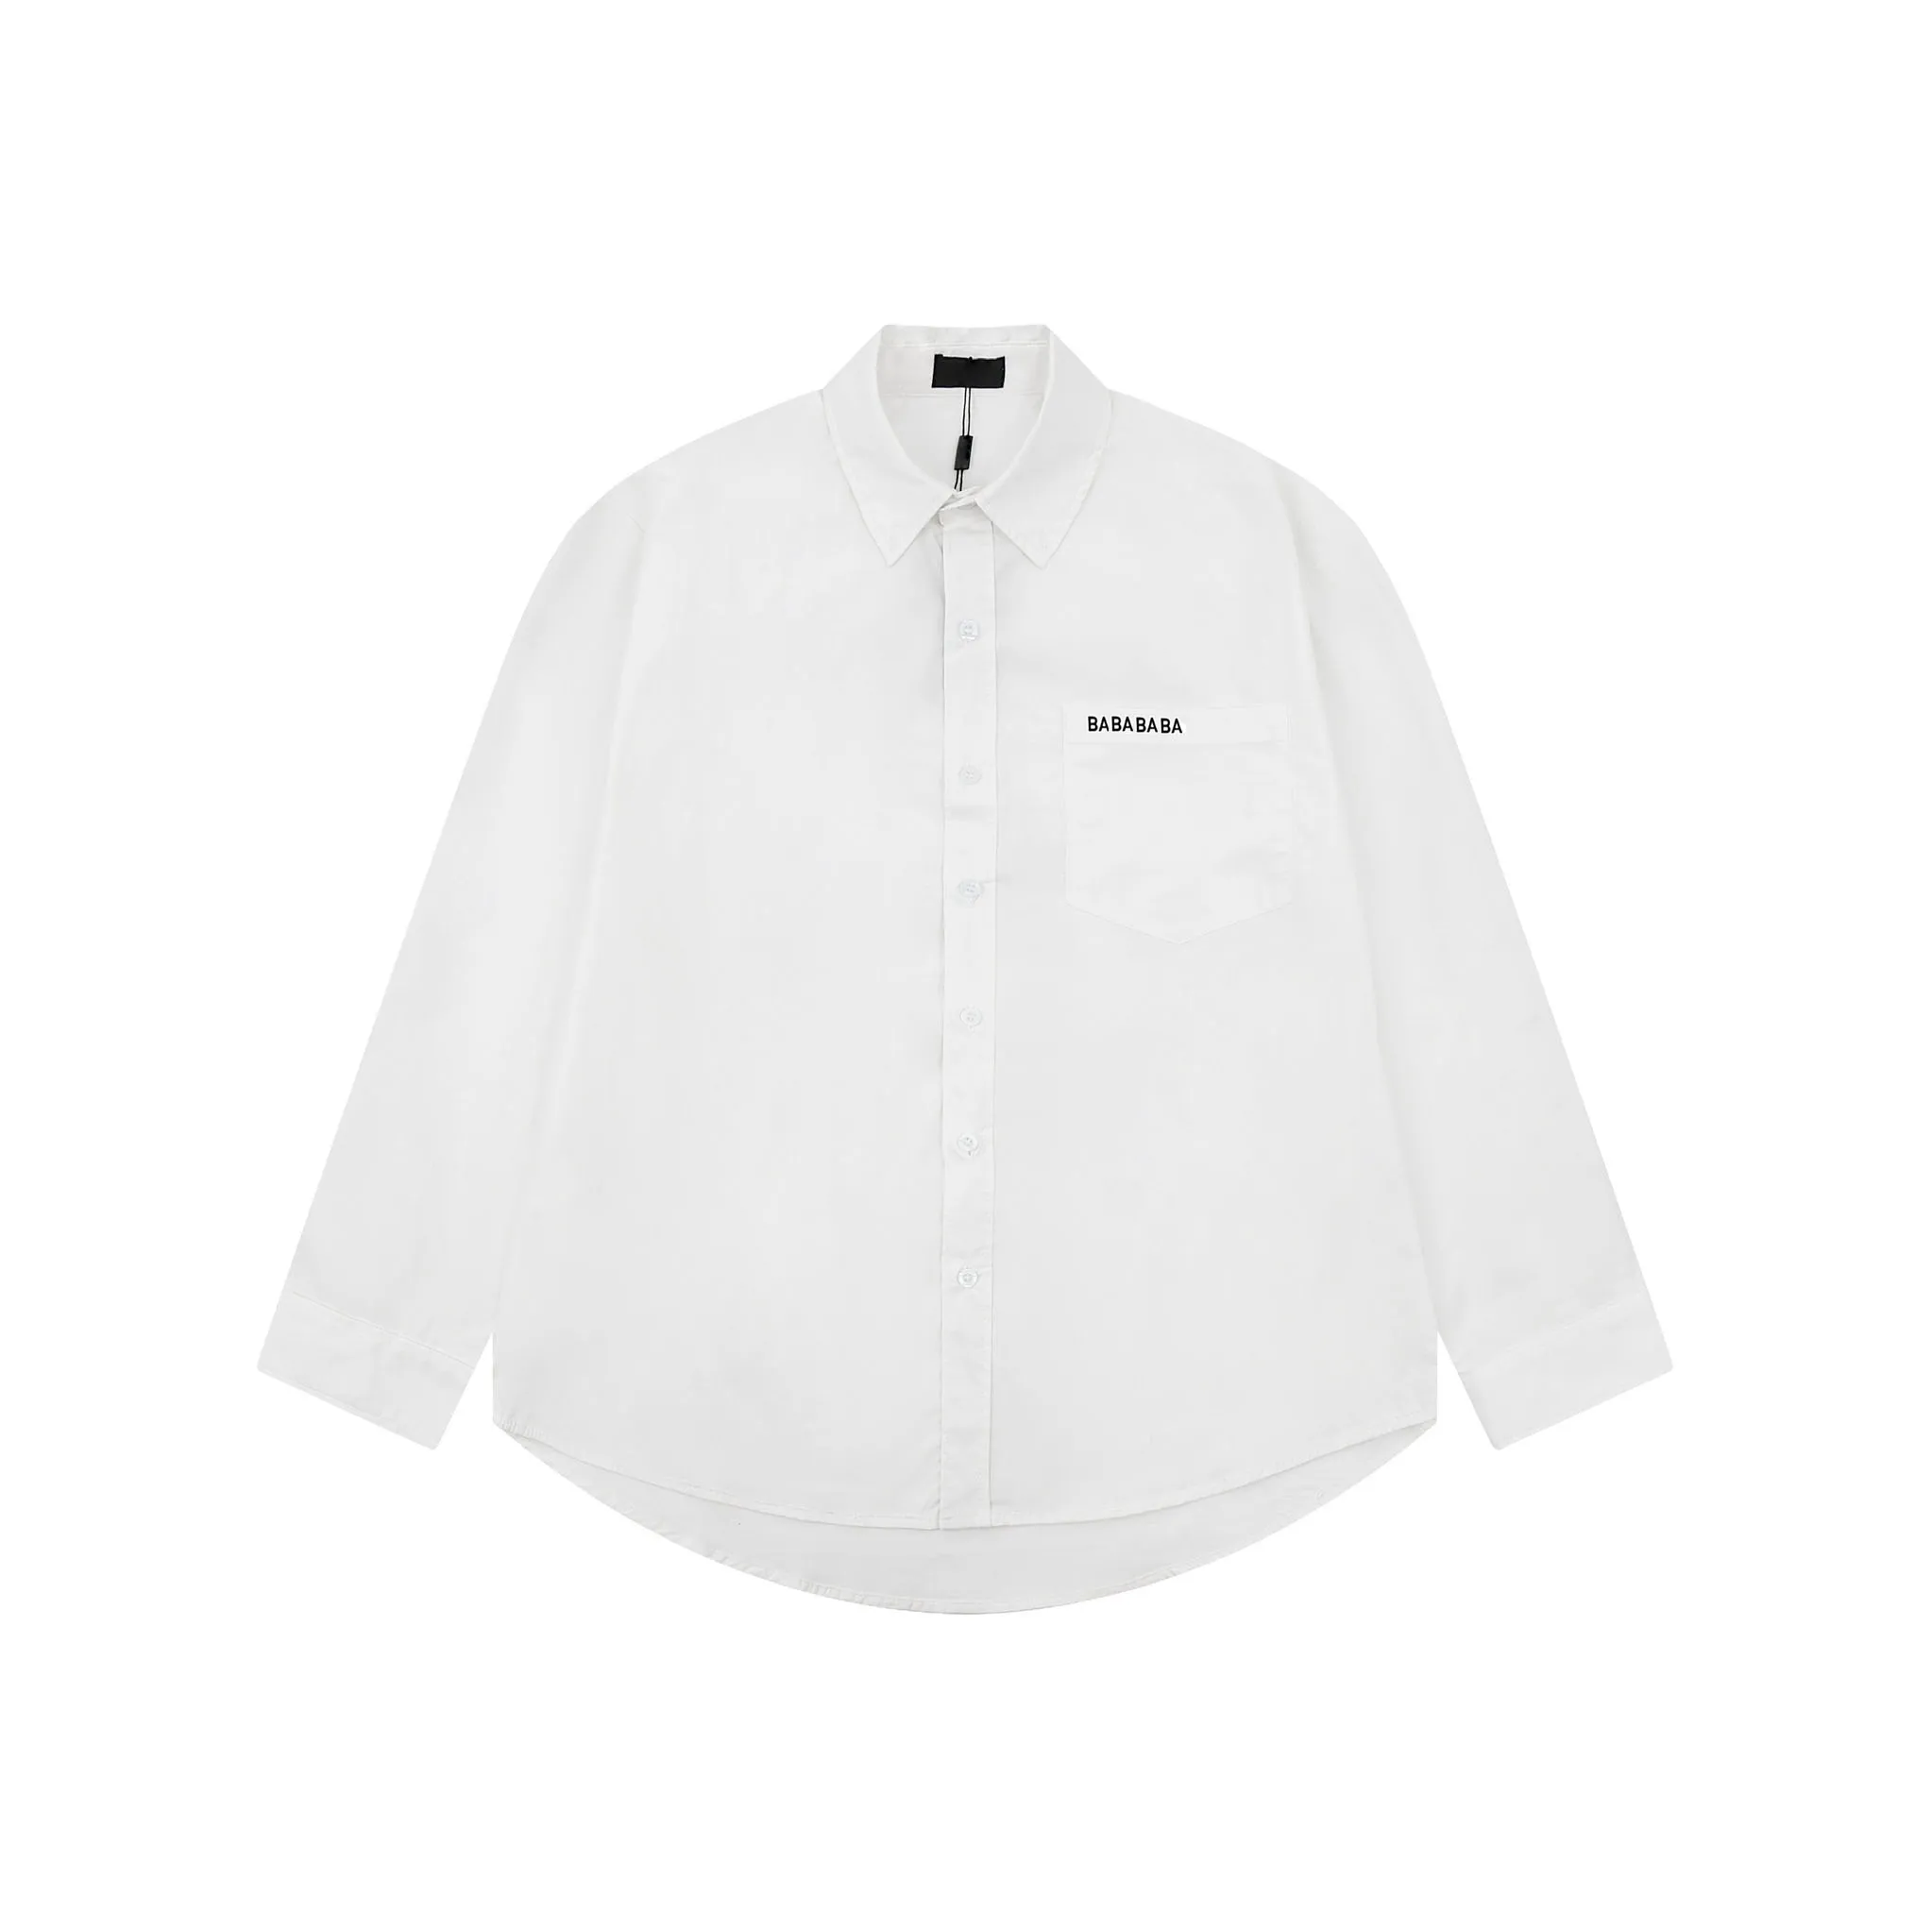 Frühling langes Lampenhemd für Männer für Männer koreanisches schlankes Langarm Shirt Casual Shirt#C2011